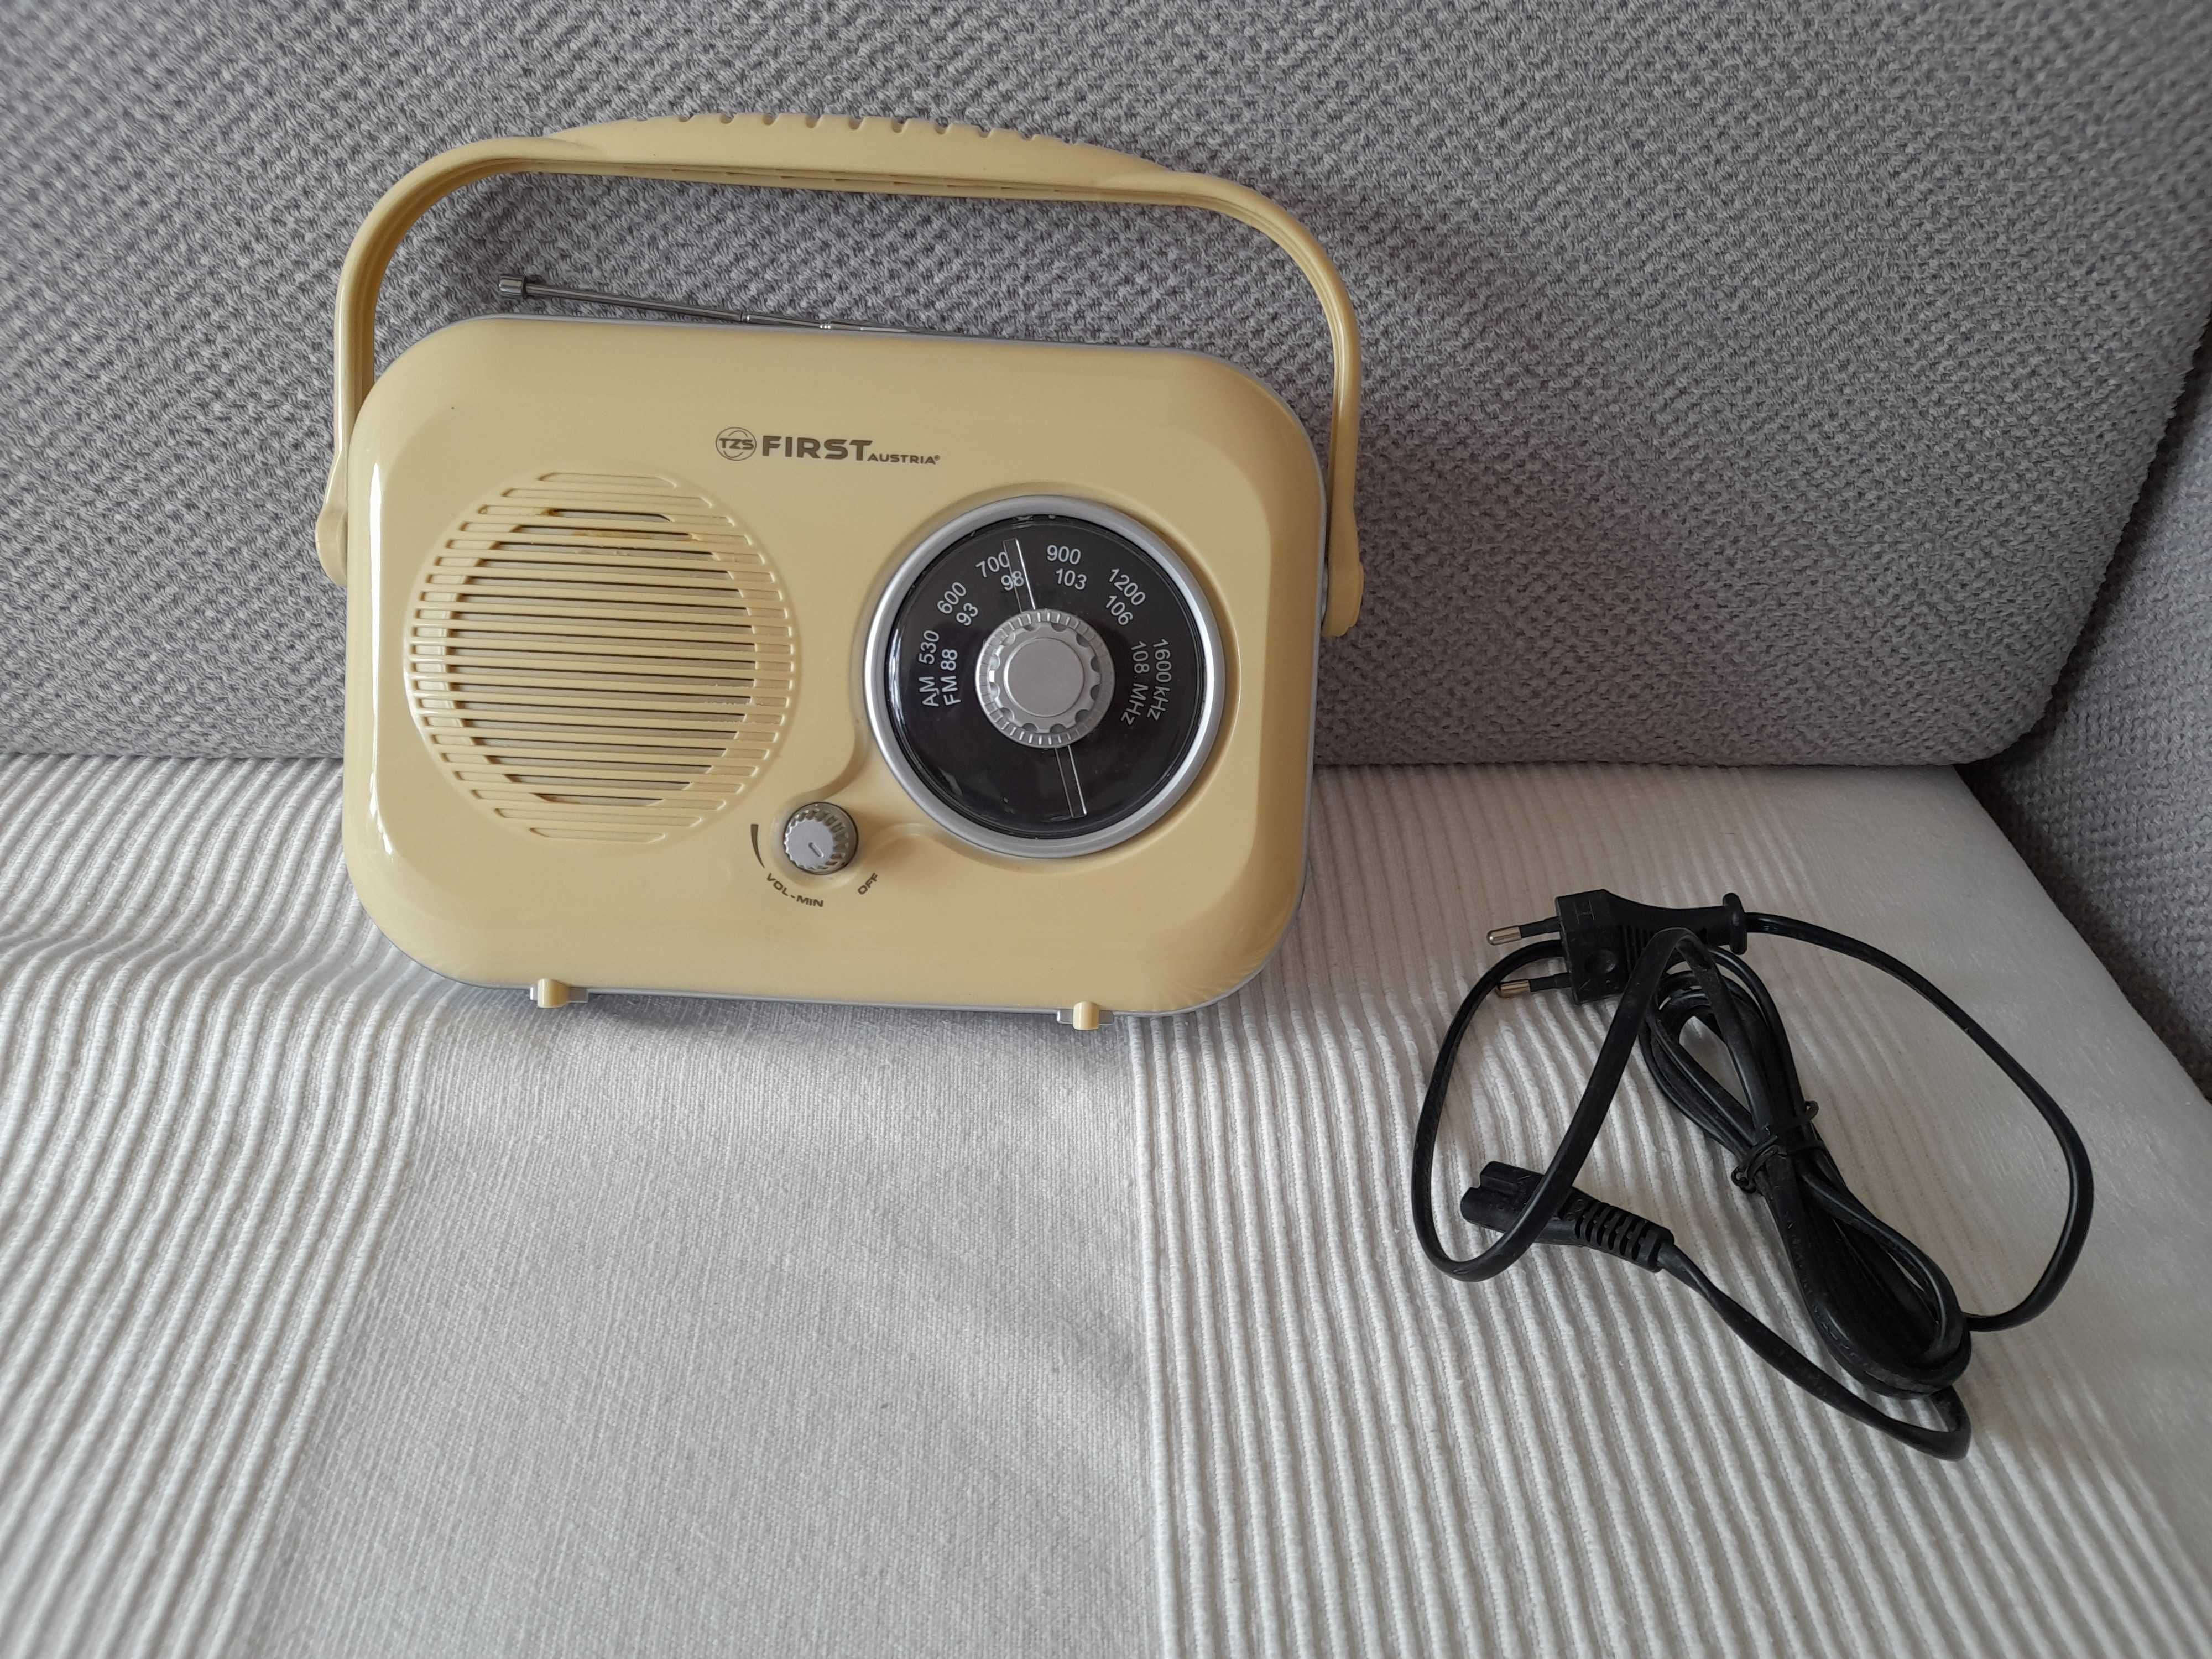 Kremowe radio stylizowane na retro TZS First Austria